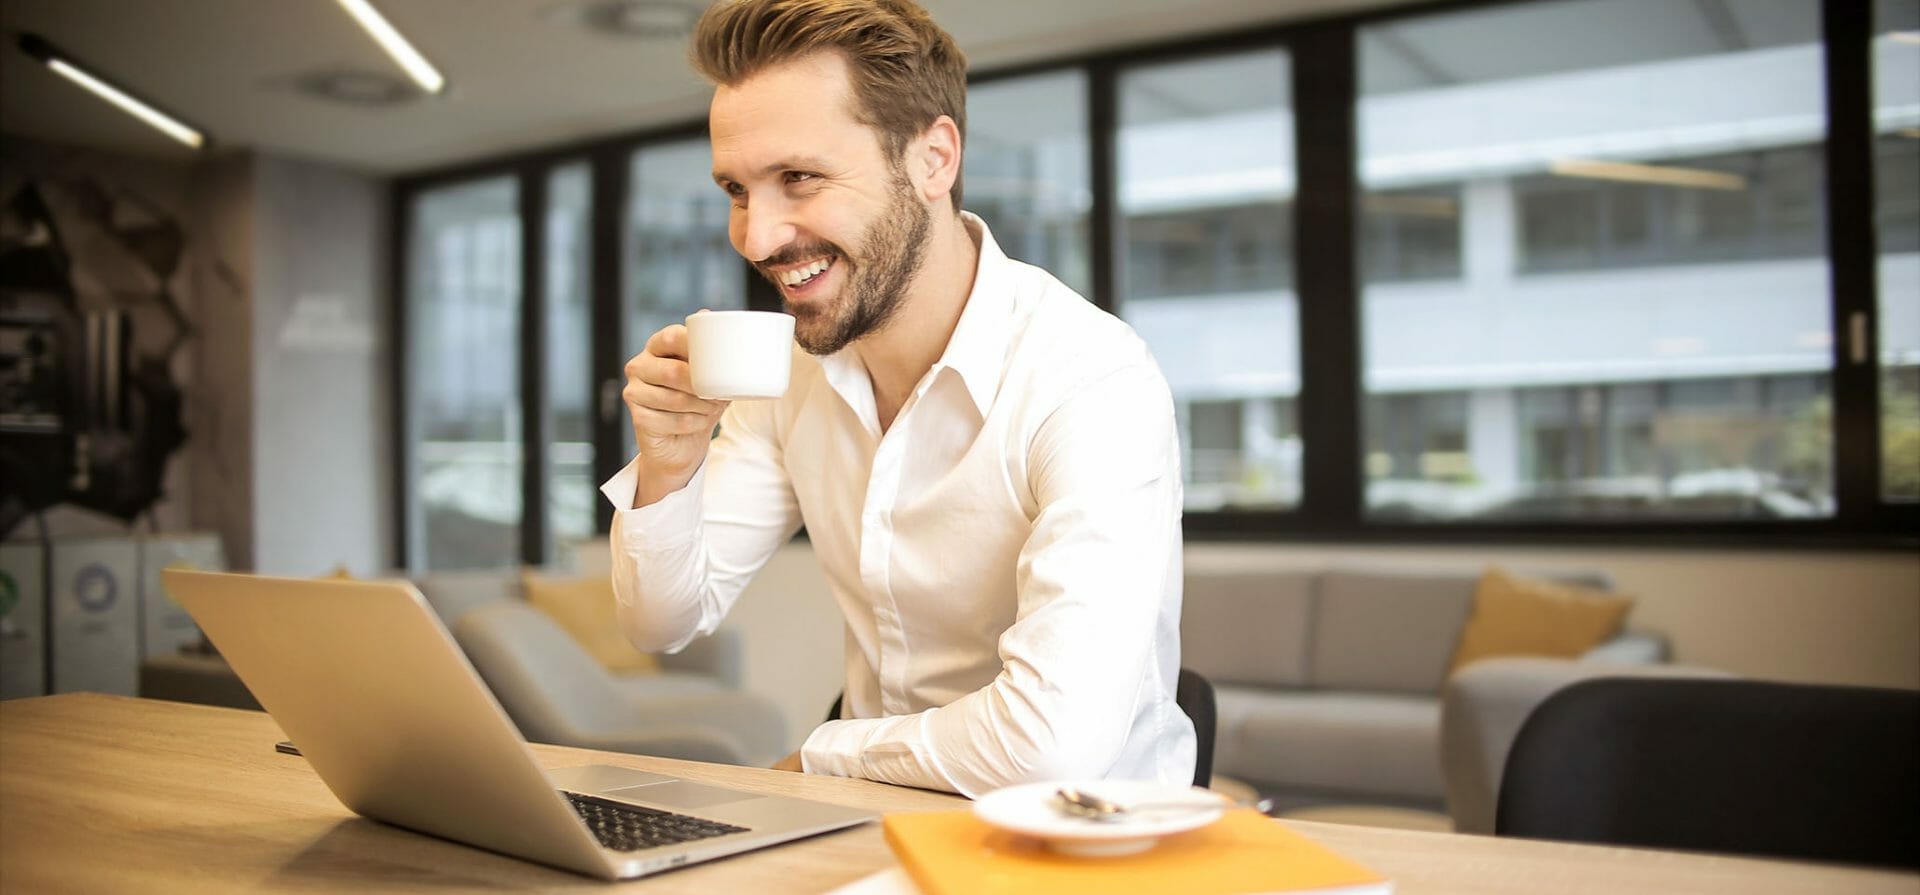 Ein Mann sitzt mit einer Tasse Kaffee vor einem Laptop, rechts daneben eine Untertasse und eine Dokumentenmappe.